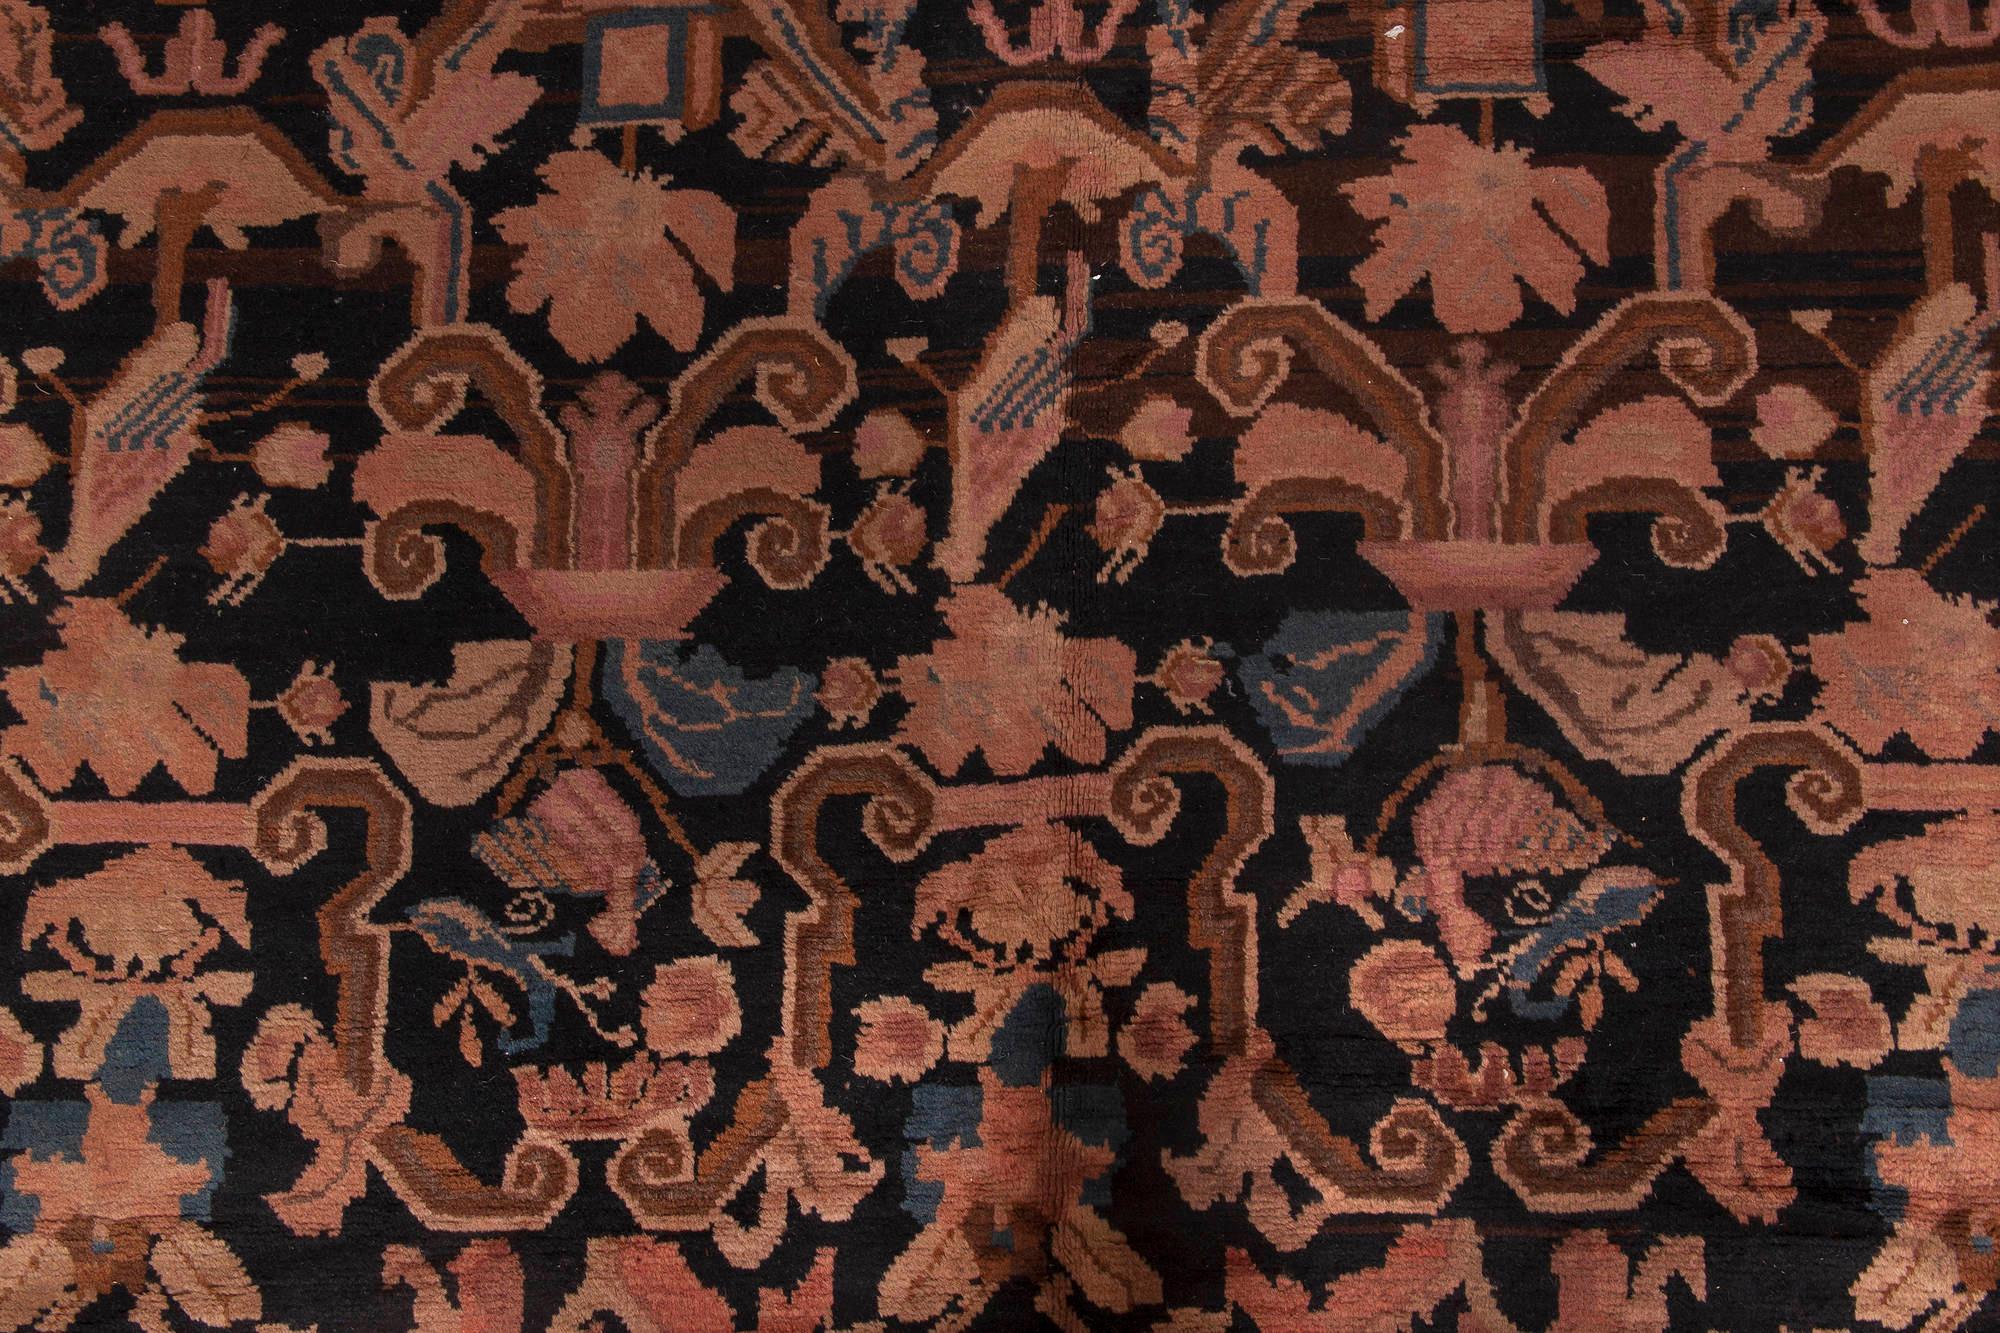 1900s Karabagh botanic brown and pink handmade wool carpet
Size: 6'9